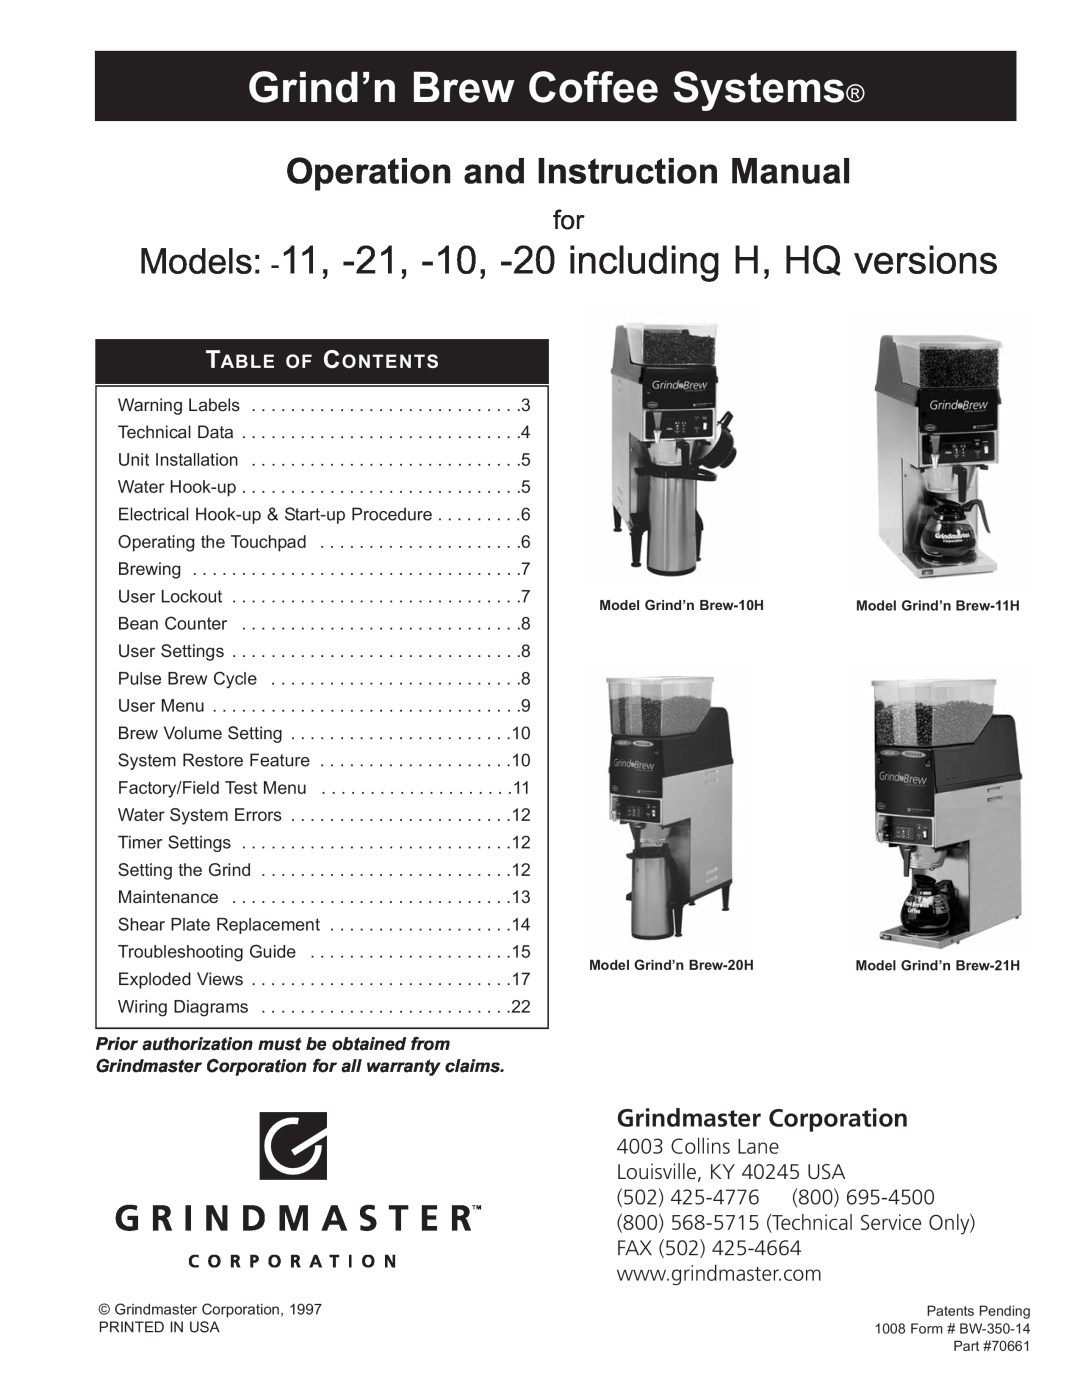 Grindmaster manual Grind’n Brew Series, Dual Bean Grinderbrewers, Model 20H, Model 21H 